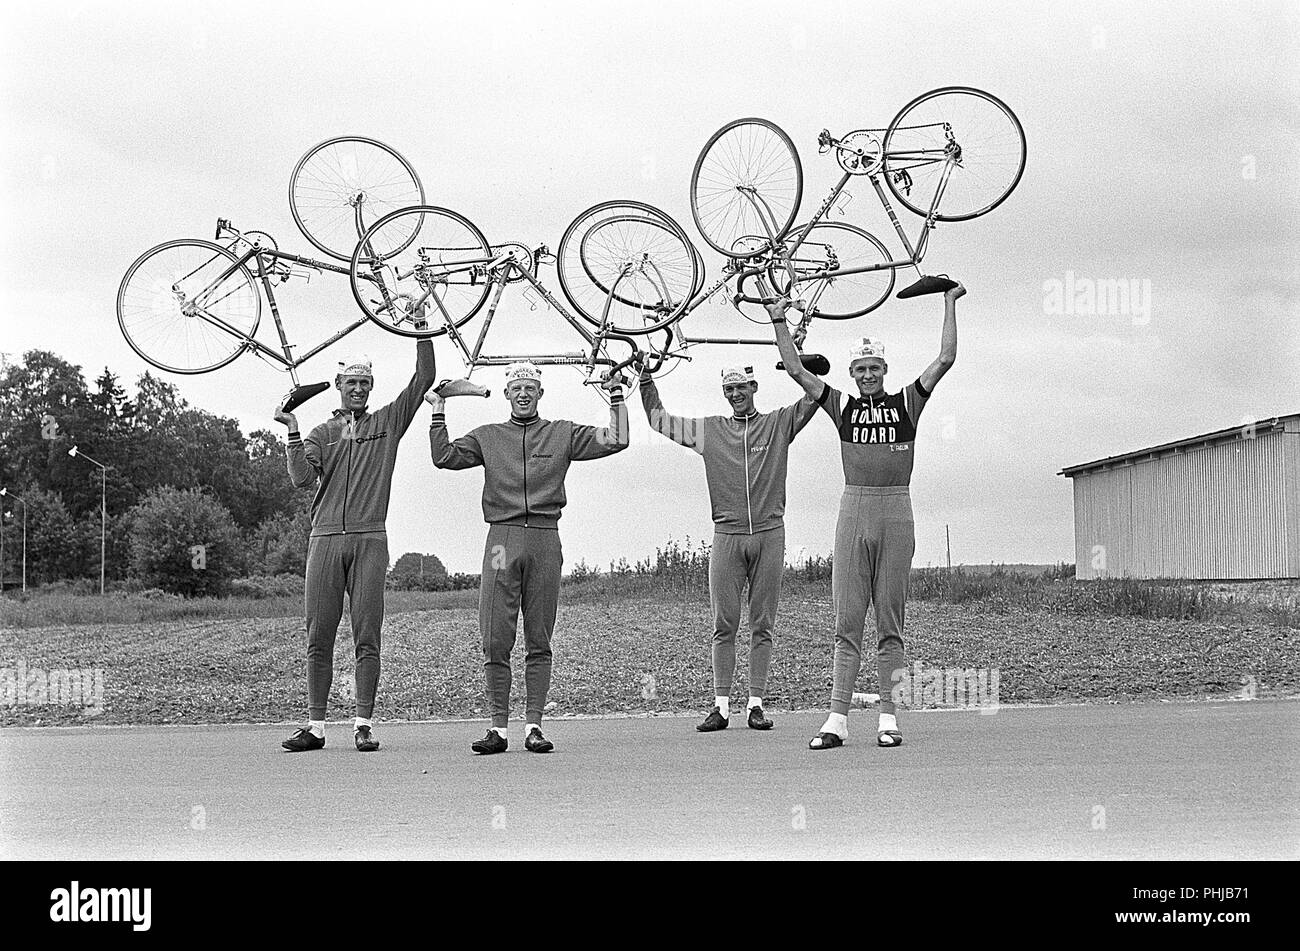 Anni sessanta ciclisti. Il Fåglum fratelli erano ciclista svedese Erik, Gösta, Sture e Tomas Pettersson. I fratelli ha vinto il team time trial mondiale amatoriale di ciclismo tra il 1967-1969 lungo con una medaglia d'argento alle 1968 Olimpiadi di estate. Essi sono stati aggiudicati la Svenska Dagbladet Gold Medal. La Svezia 1967 Foto Stock